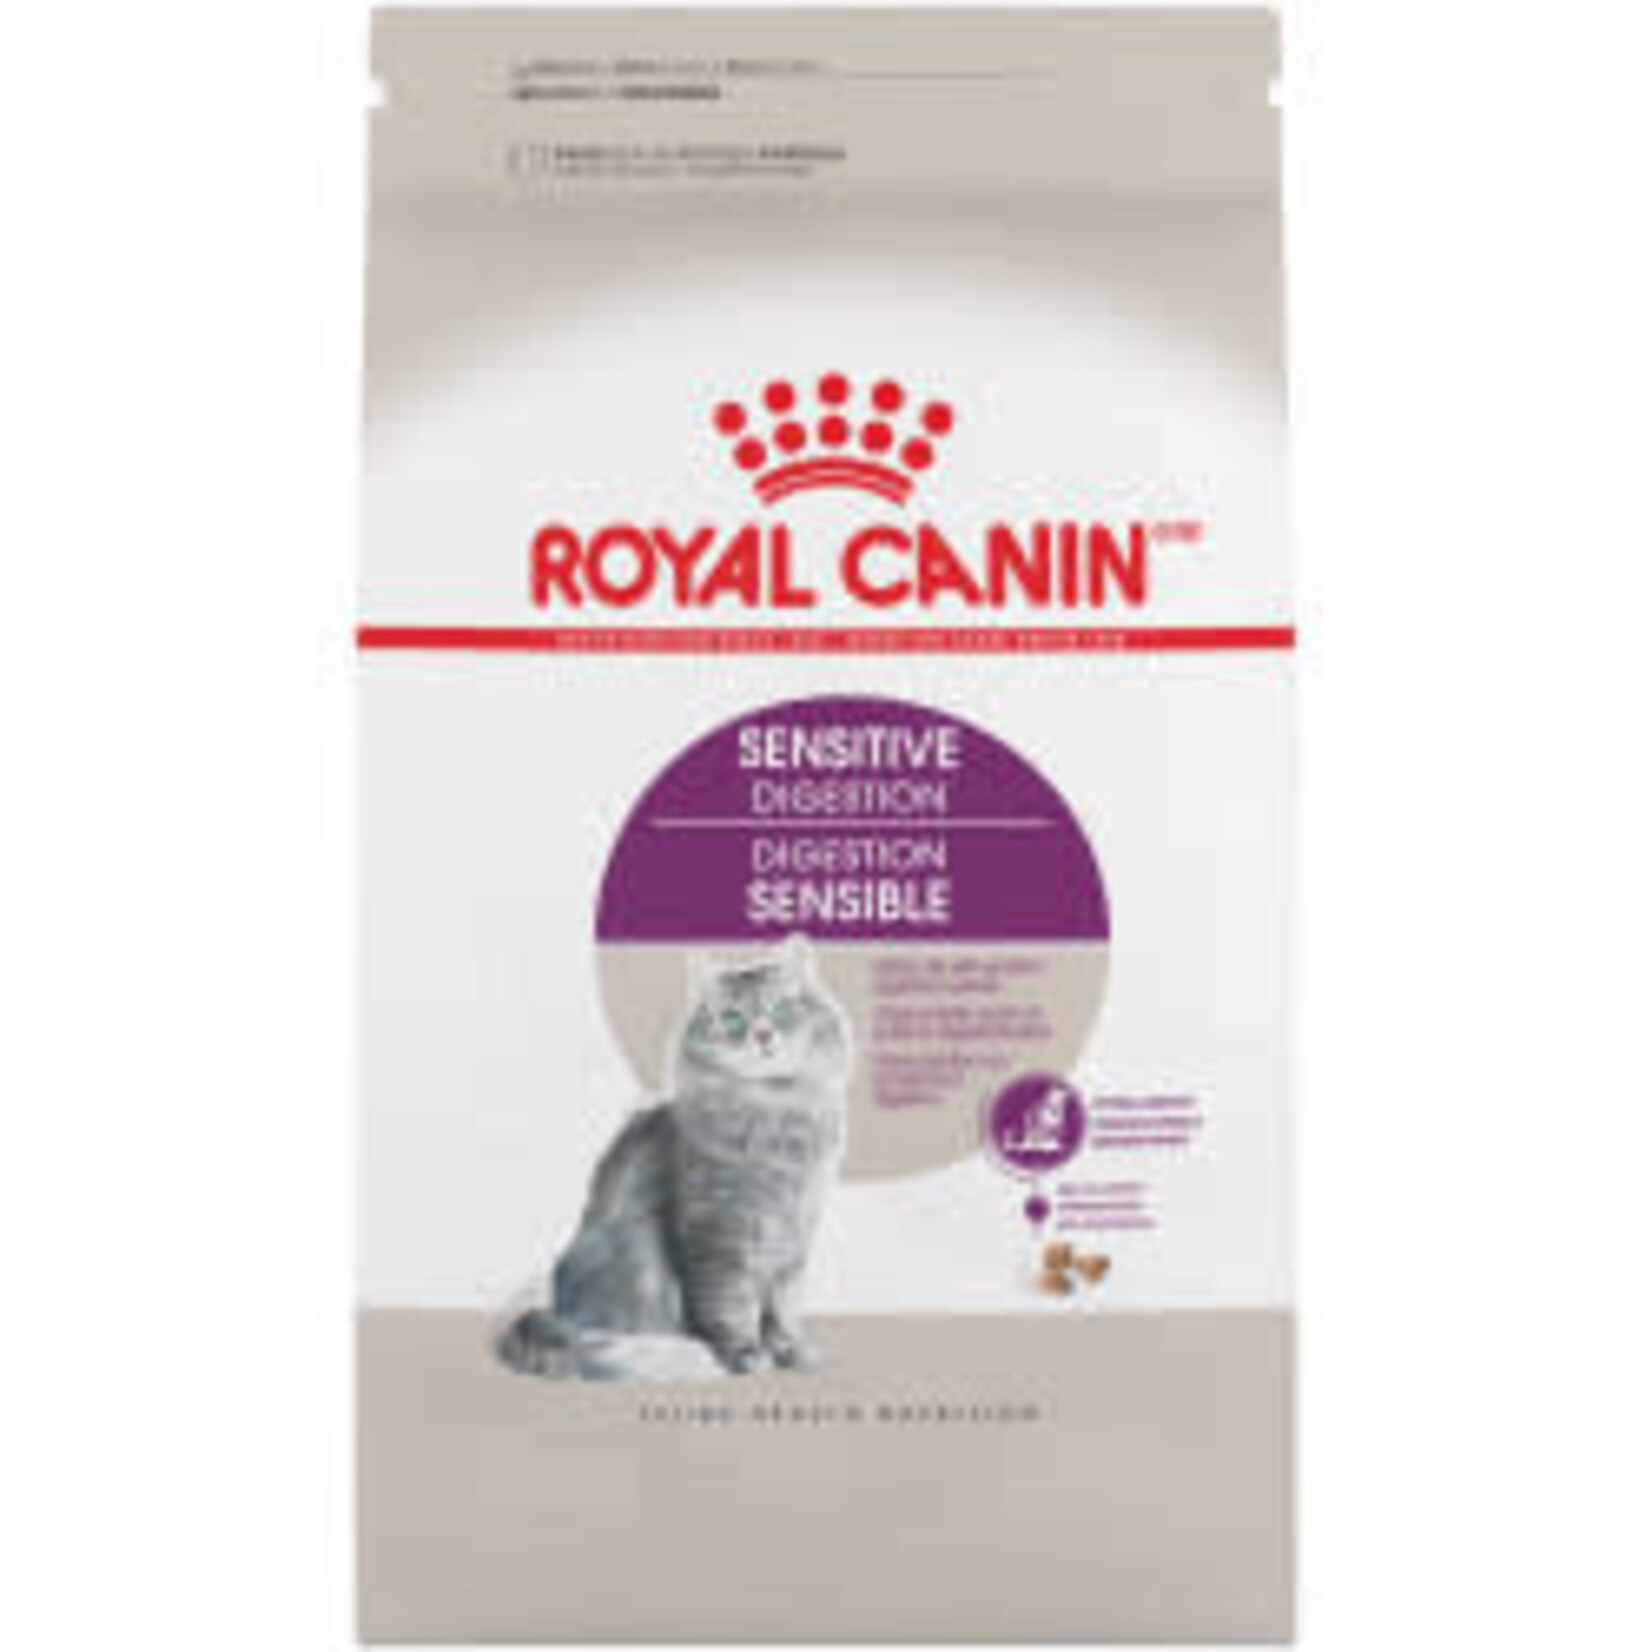 Royal Canin Royal Canin Chat Santé Digestive Adulte 15lb/6.80kg